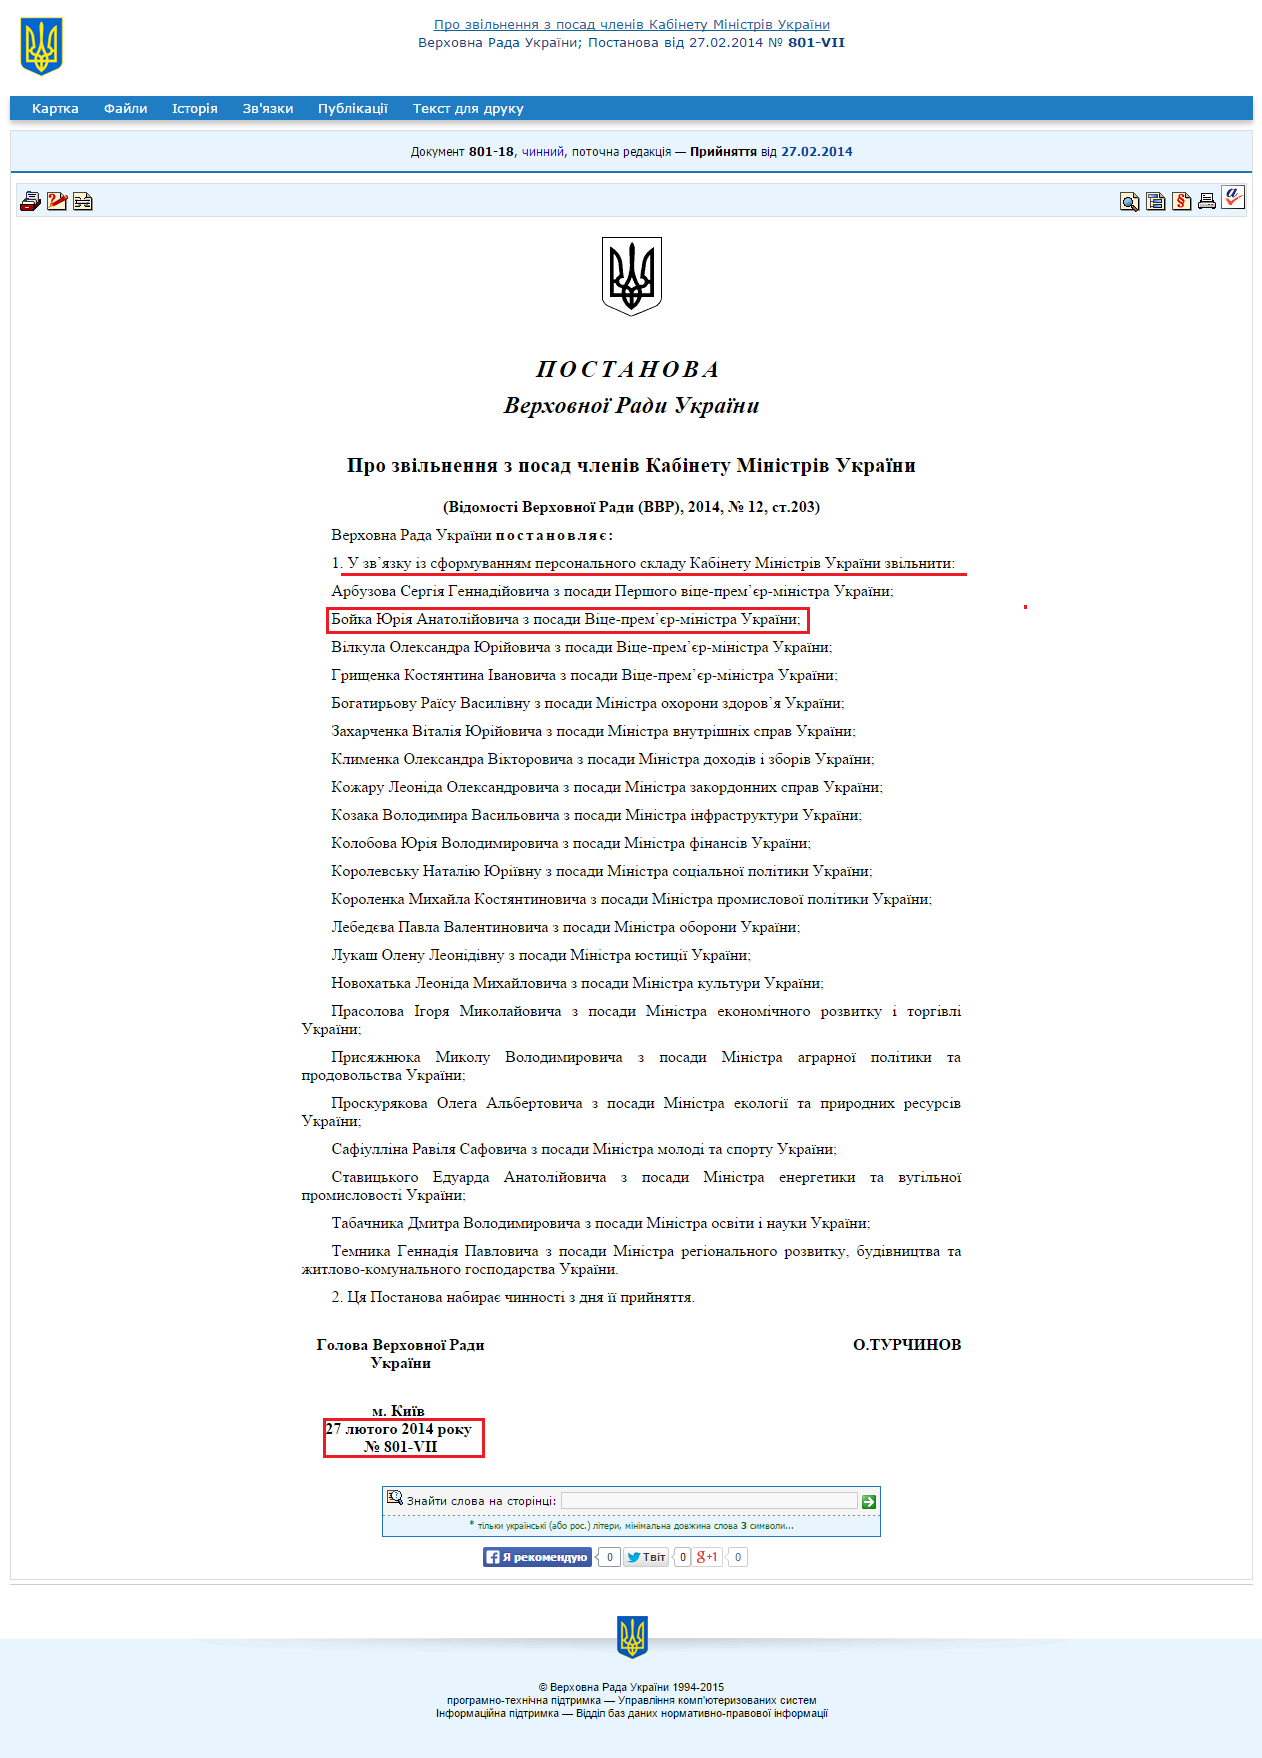 http://zakon3.rada.gov.ua/laws/show/801-18